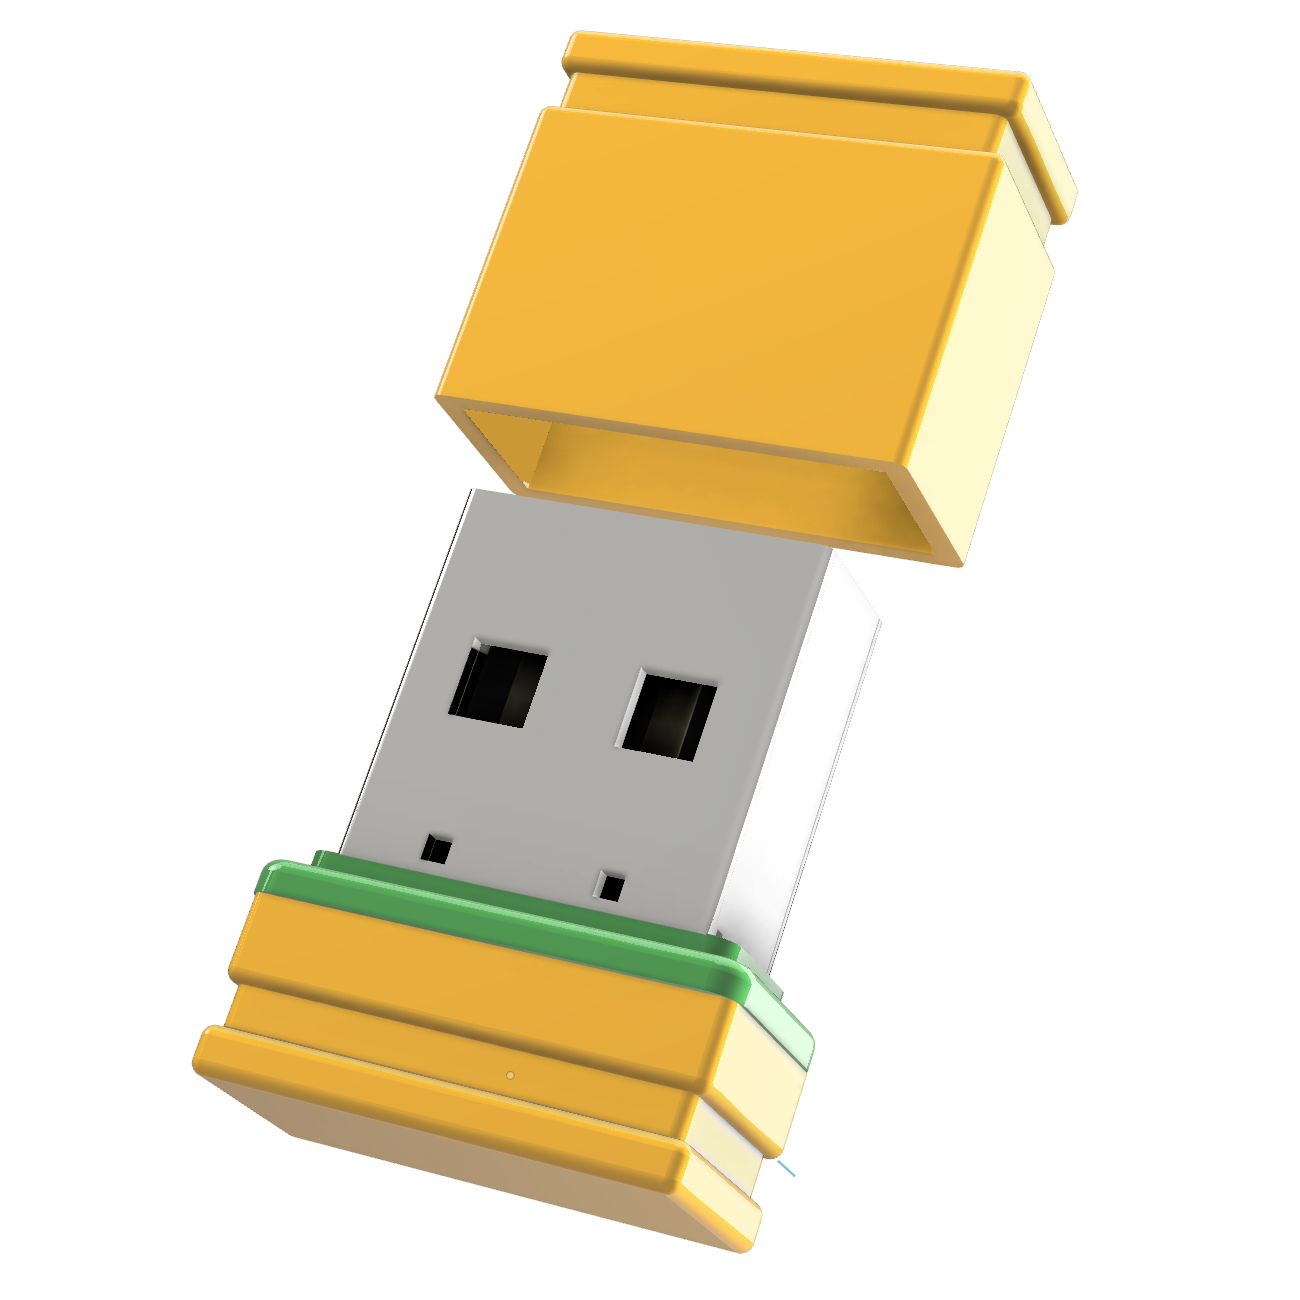 ®ULTRA 1 Mini GB) USB-Stick (Gelb/Grün, P1 USB GERMANY